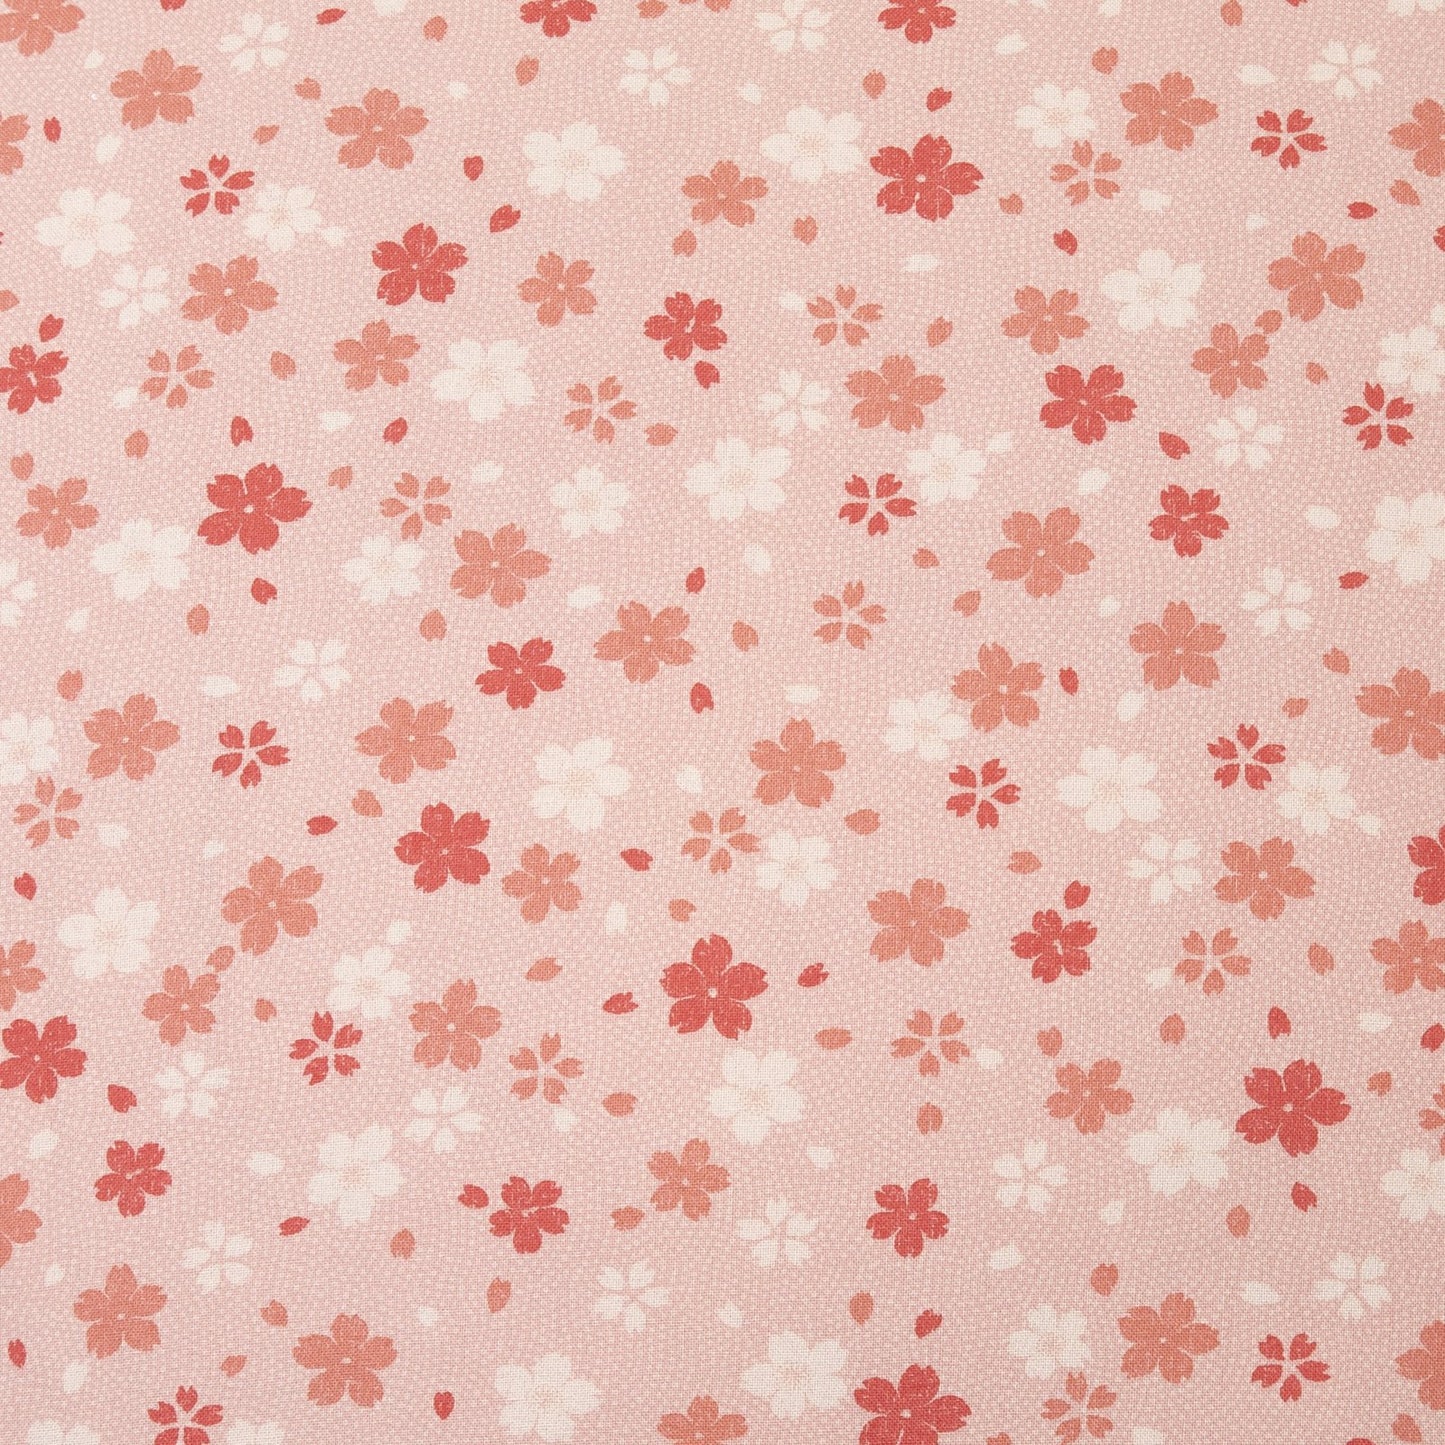 Cherry Blossom Pink Throw Pillow_Pillows & Shams_Throw Pillows